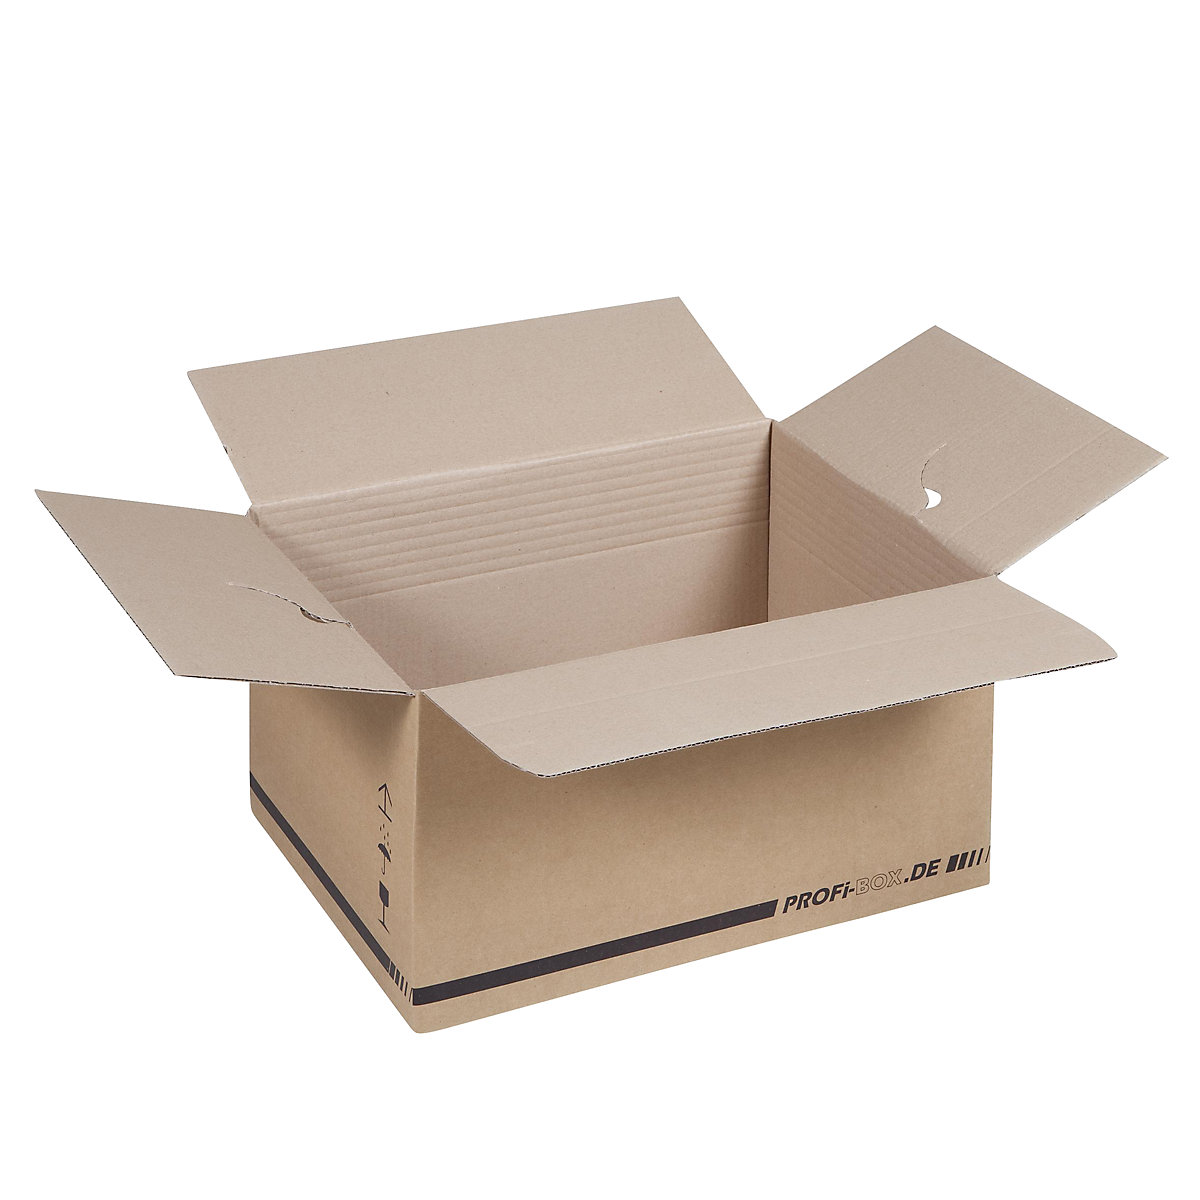 Profesionalne kutije, od 1-valnog kartona, FEFCO 0701, unutarnje dimenzije 445 x 315 x 235 mm, pak. 50 kom.